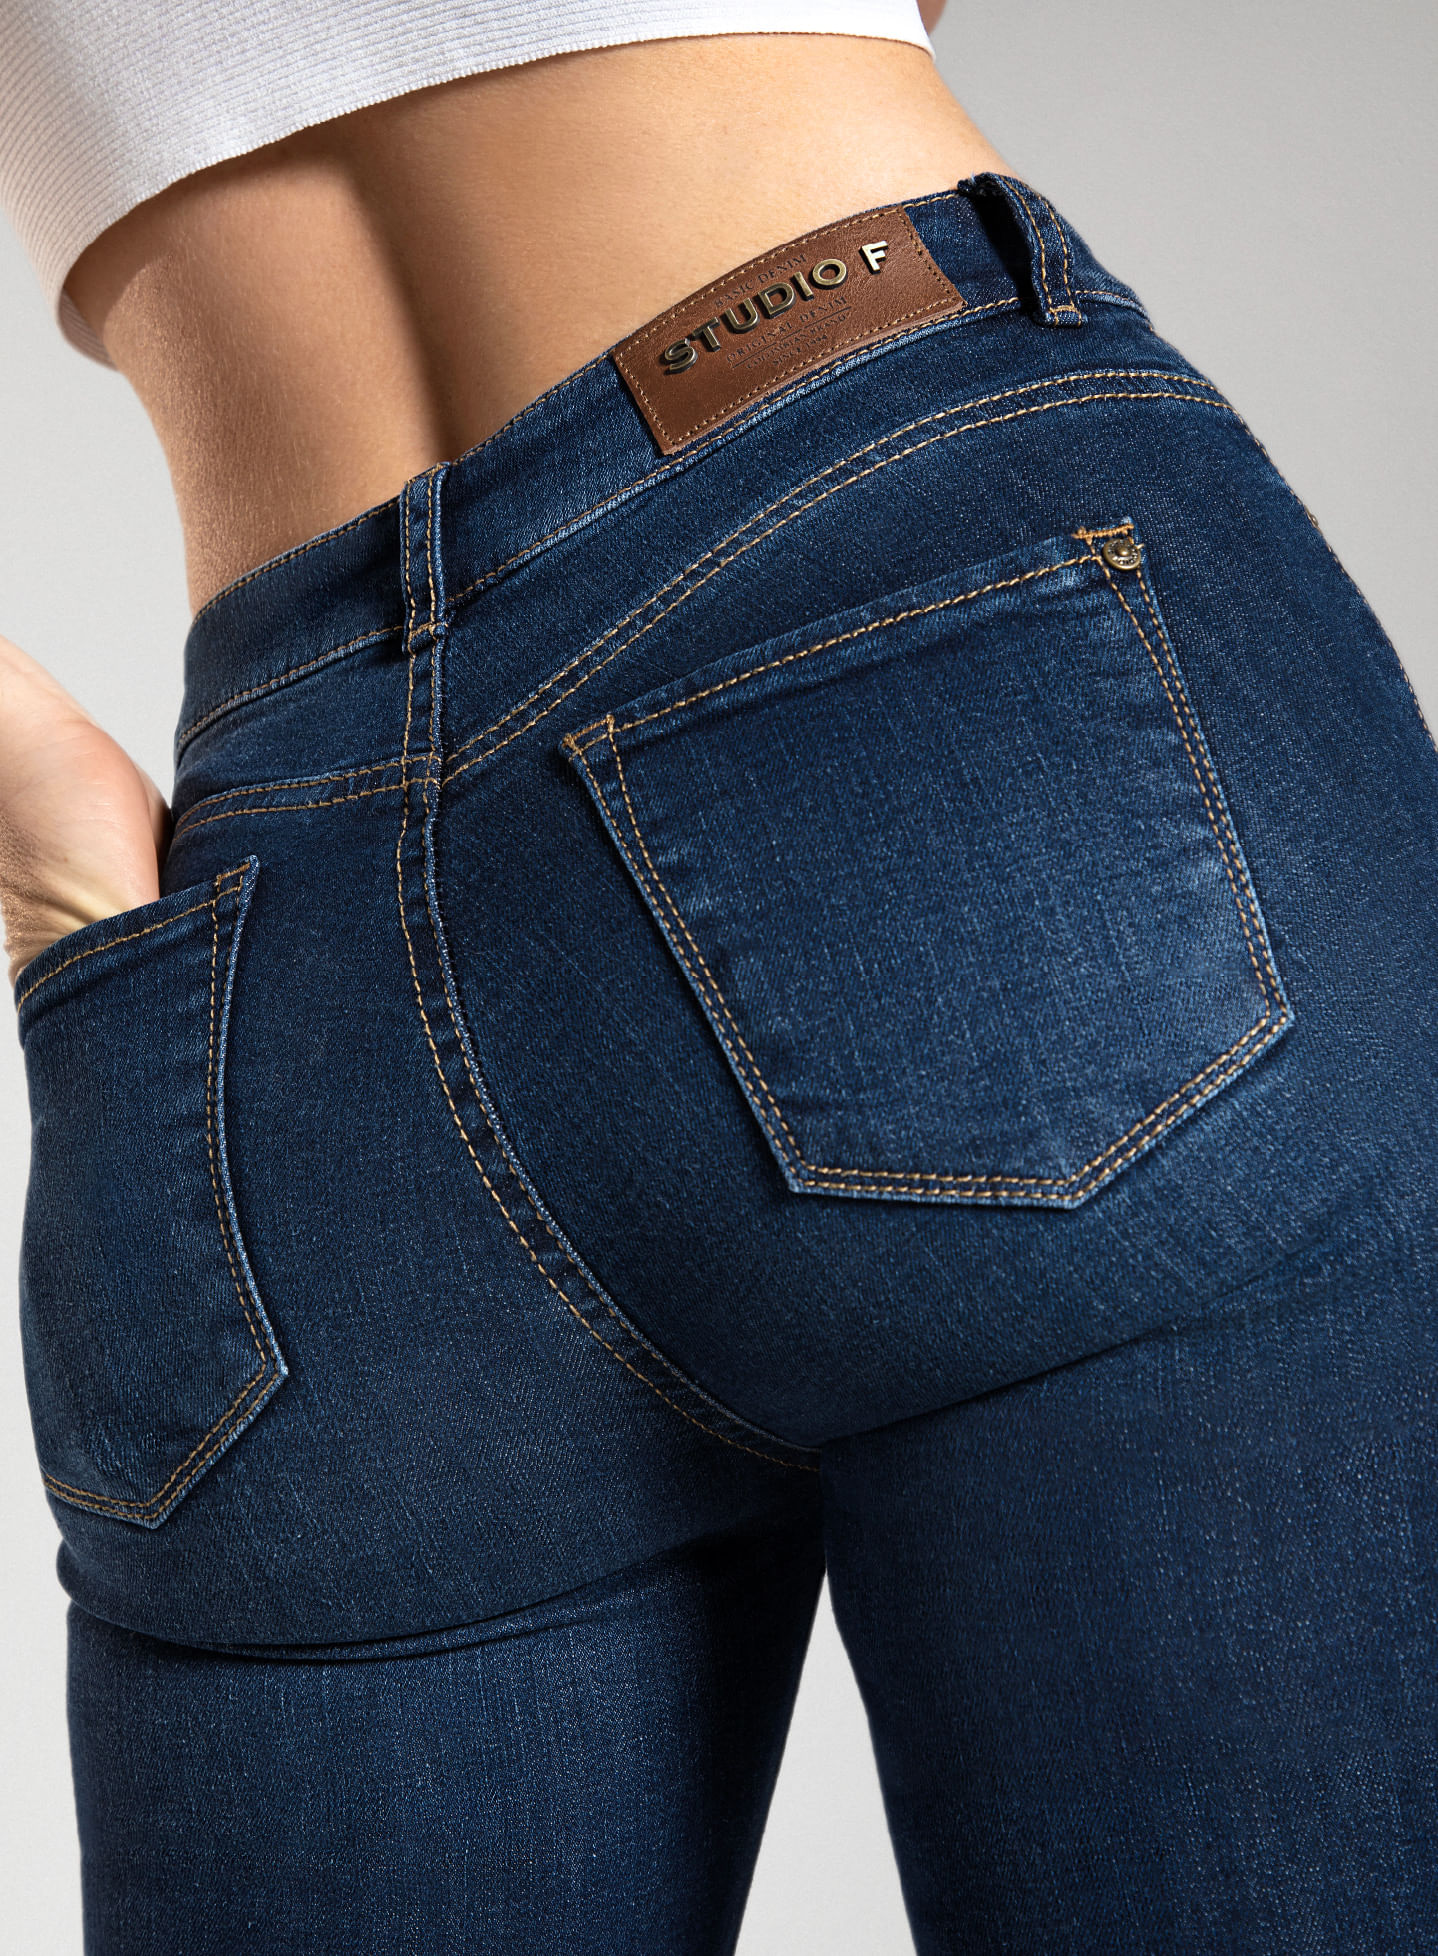 Foto de mujer de espaldas con jean bota campana, con 5 bolsillos, tiro alto y pretina angosta de la marca Studio F 